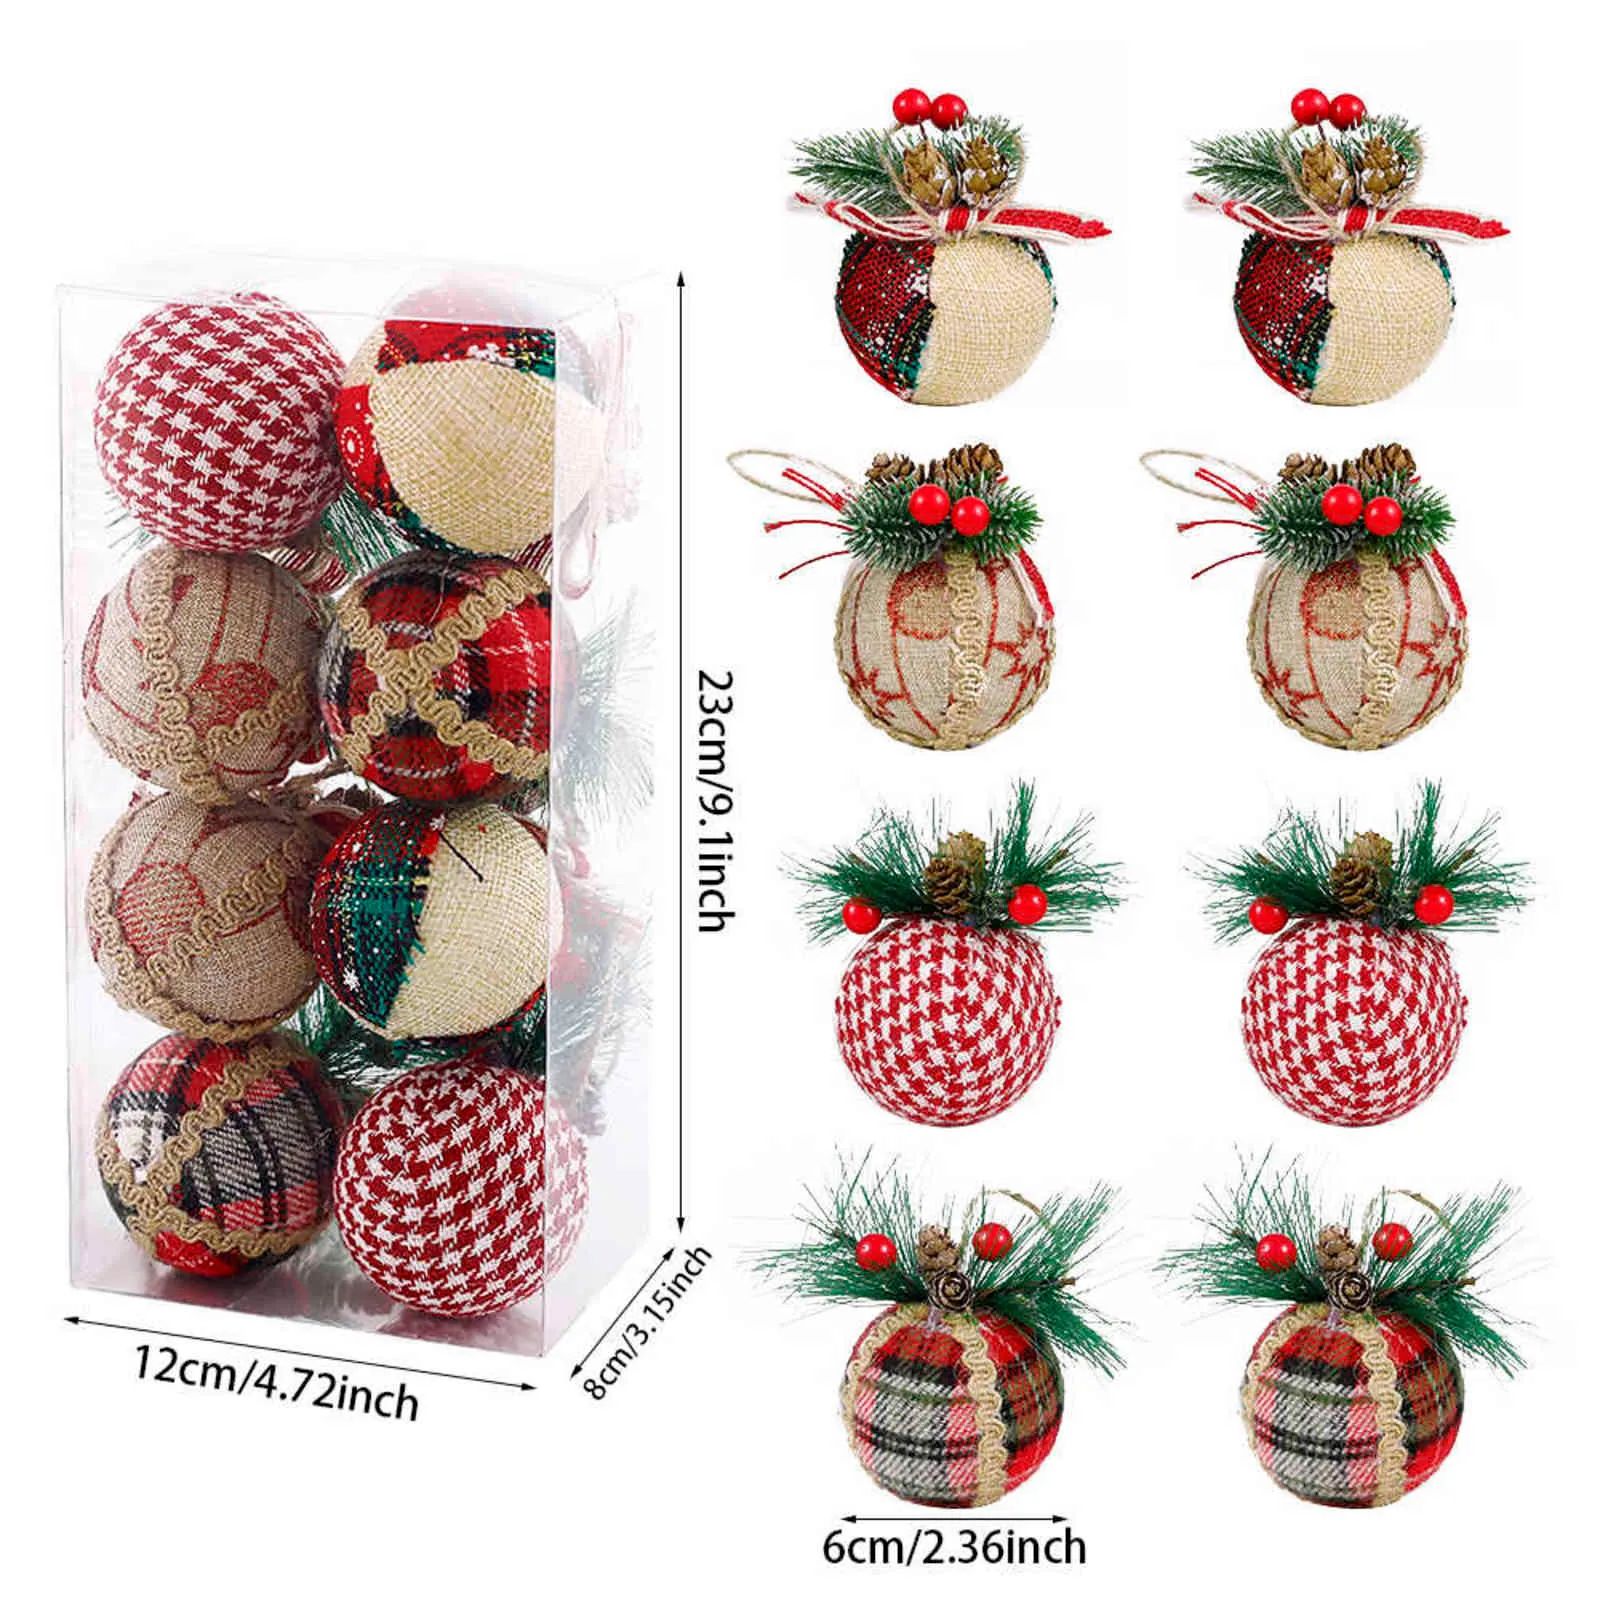 松のコーンウールの装飾のぶら下がっているボールと灰色の赤い緑の格子縞のパターンぶら下がっているボール素朴なクリスマスツリーの装飾ペンダント211104